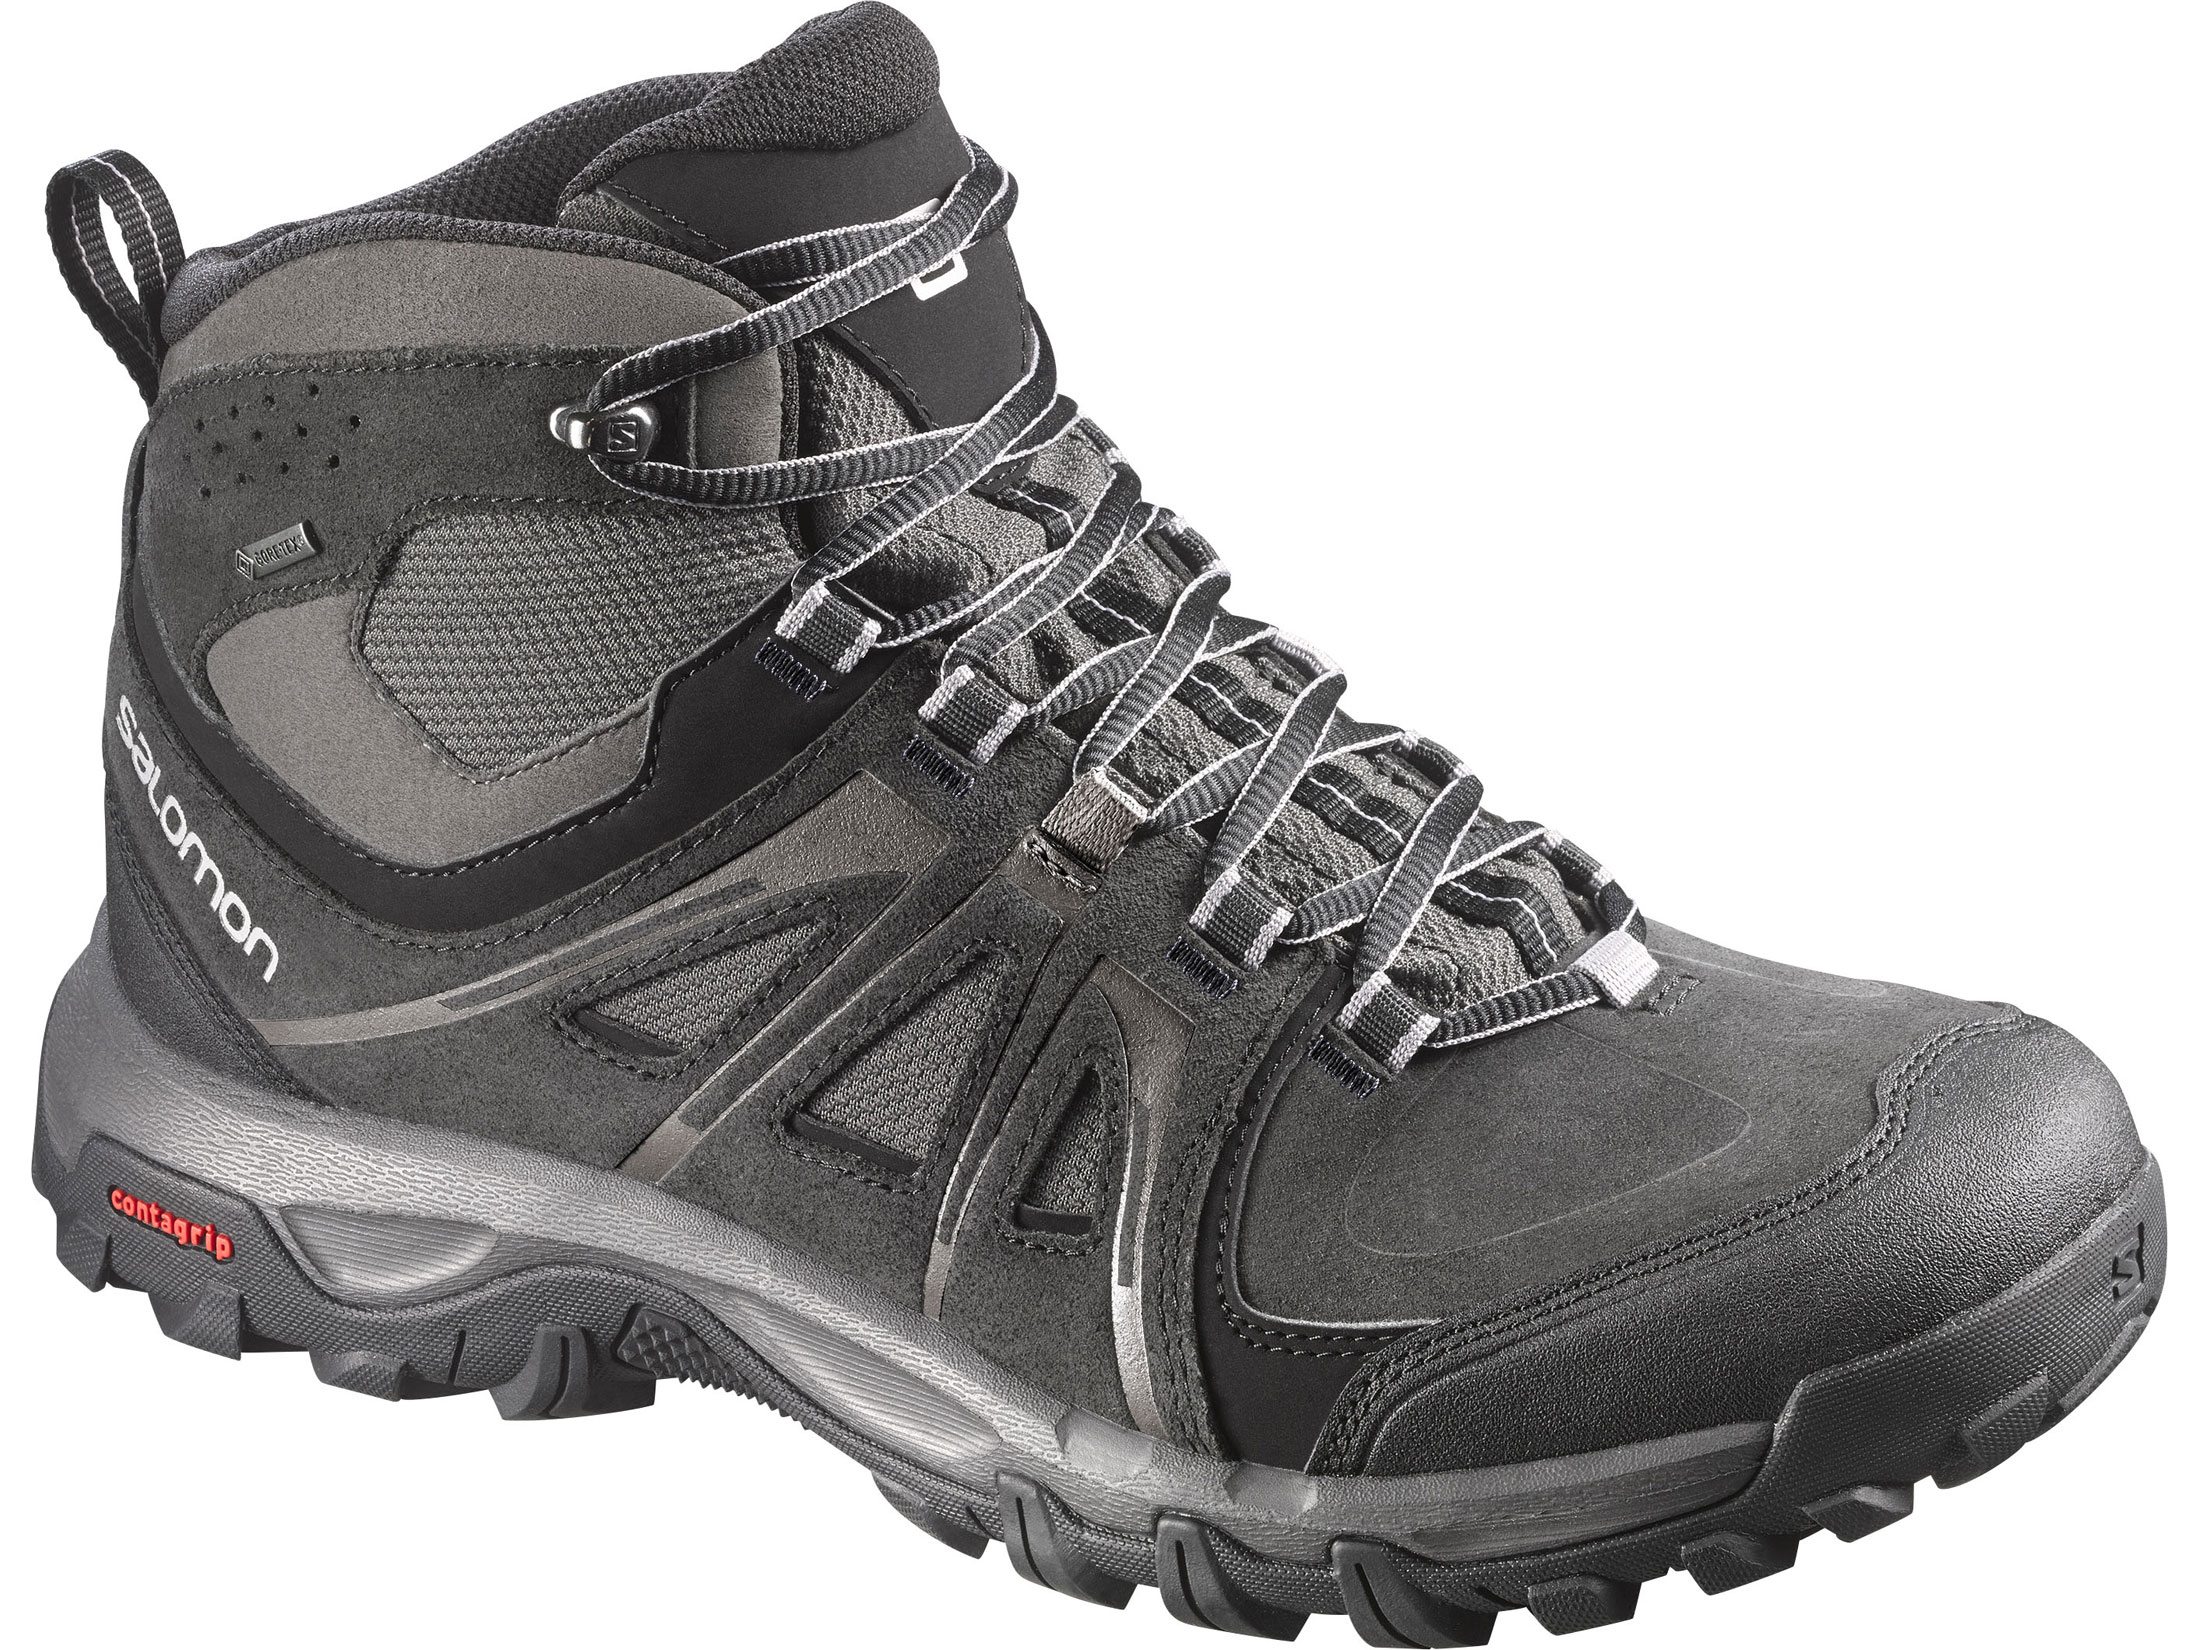 Salomon Evasion Mid GTX 5 GORE-TEX Hiking Boots Leather/Nylon Black